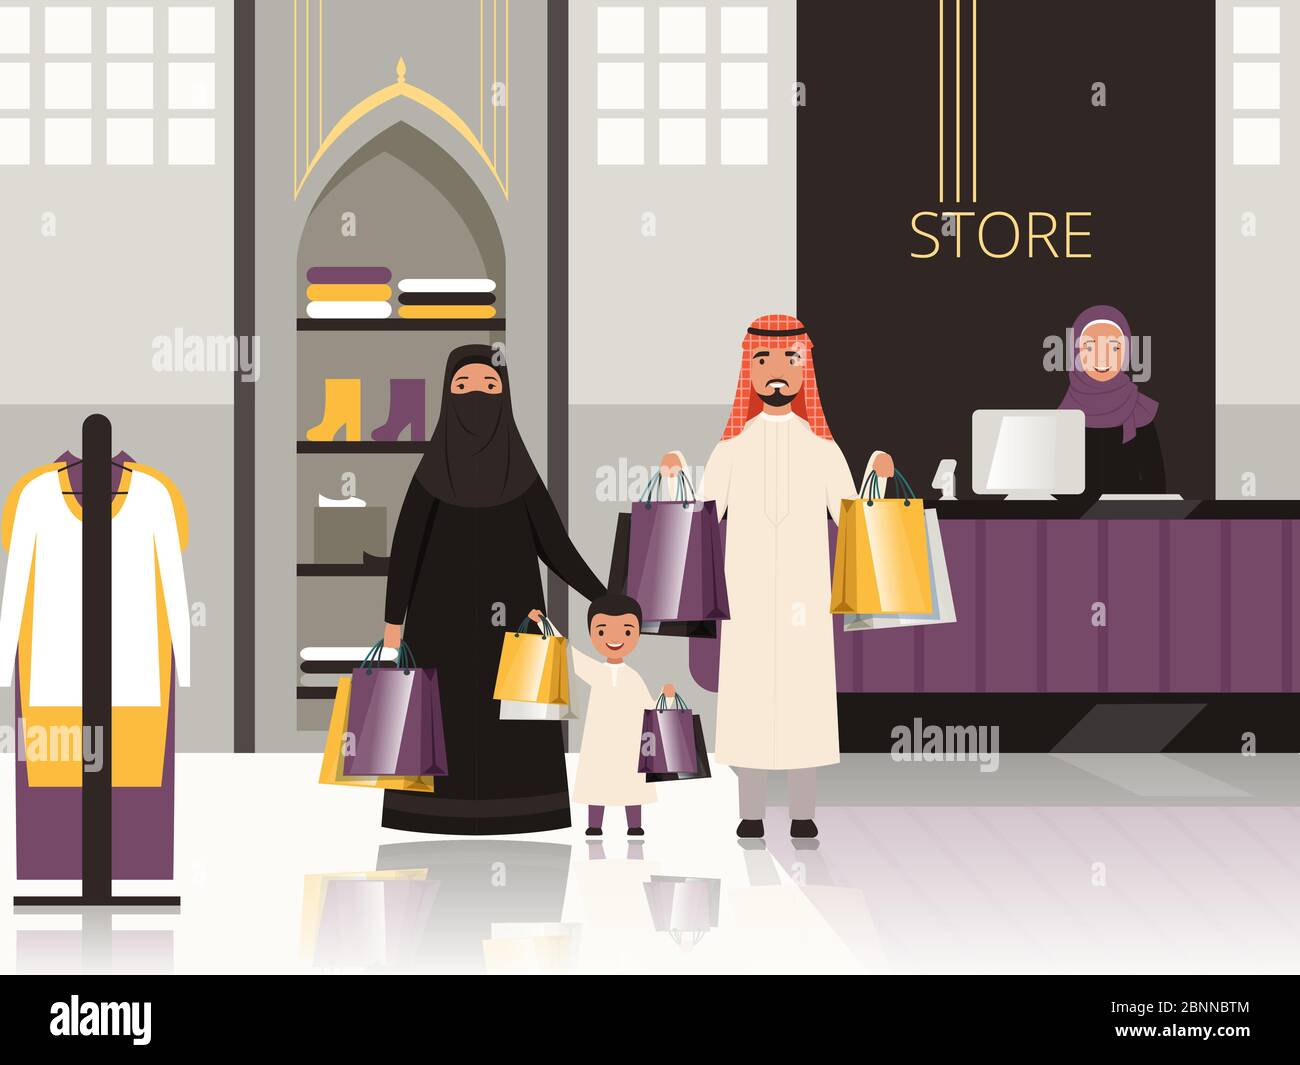 Saudi-Arabien auf dem Markt. Arabische Familie Kasse im Lebensmittelgeschäft oder Supermarkt Geld für Lebensmittel Vektor Cartoon Hintergrund bezahlen Stock Vektor